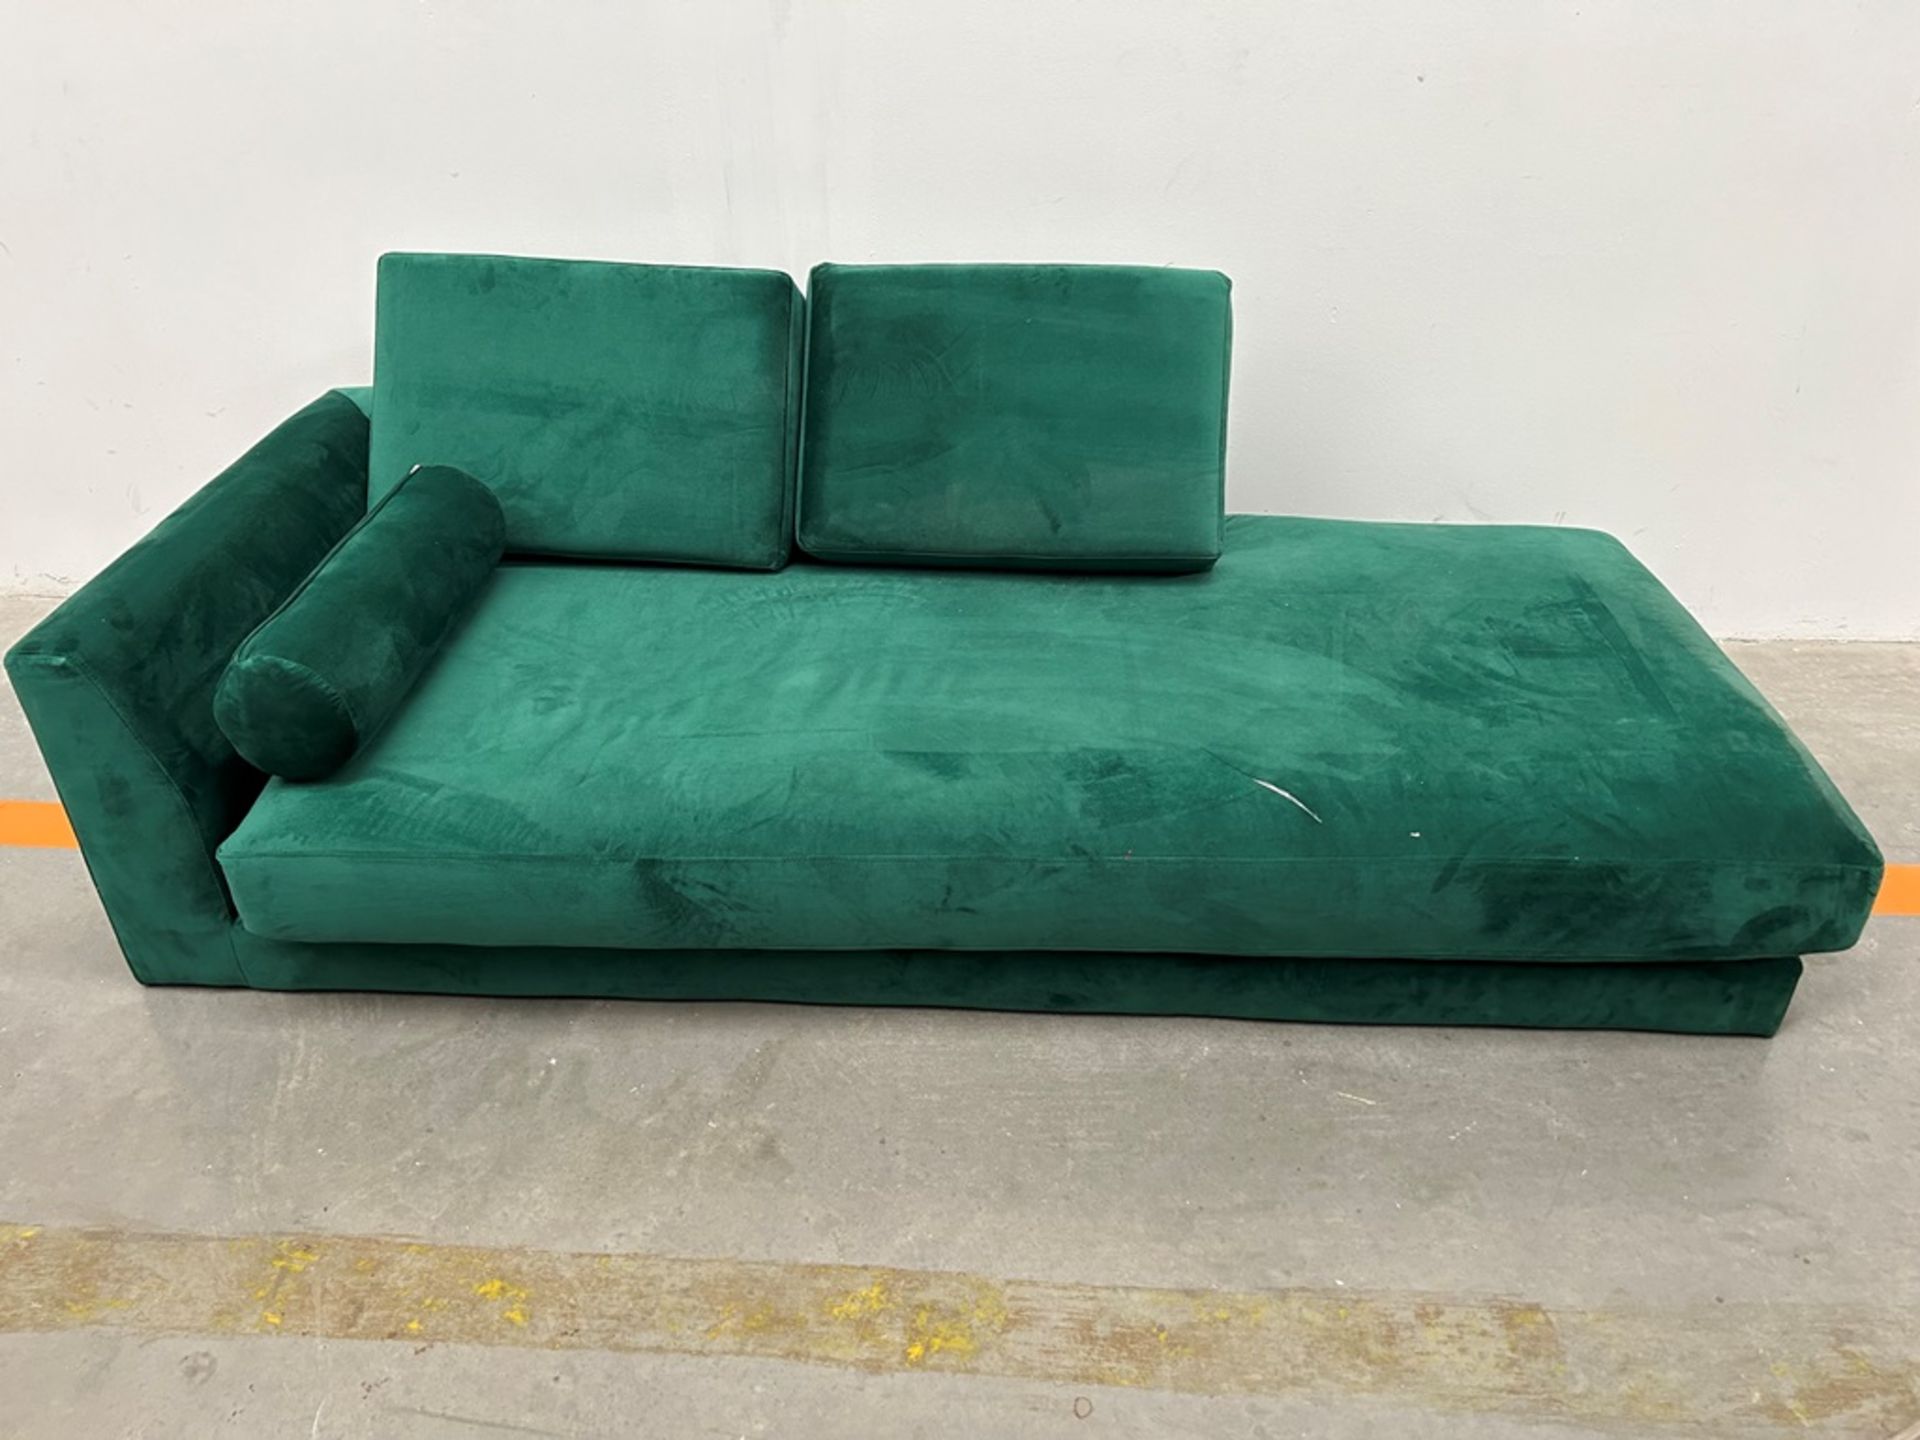 Lote de 2 artículos contiene: 1 diva reclinable verde; 1 sofá cama Marca HOMETRENDS (Equipo de devo - Image 2 of 7